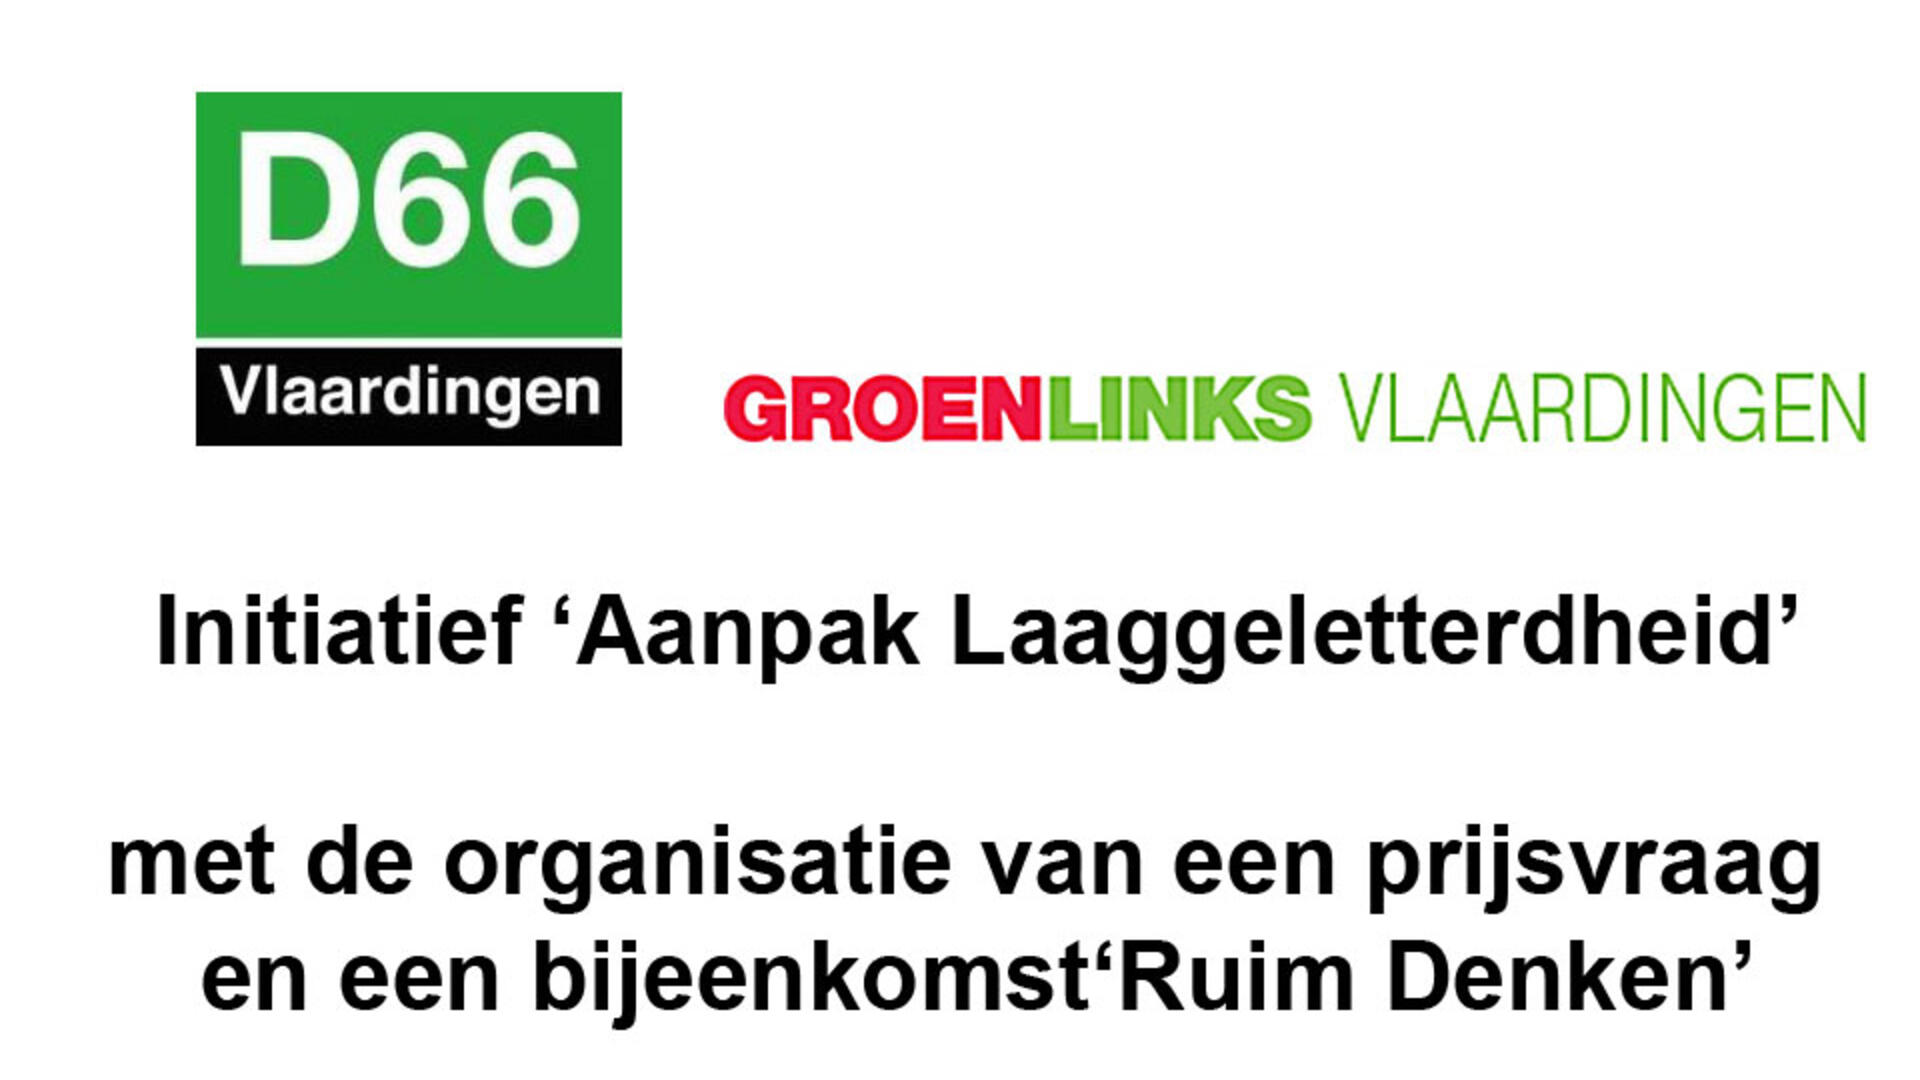 D66 En GroenLinks nemen initiatief voor meer aandacht voor laaggeletterdheid - 21 nov. 2016